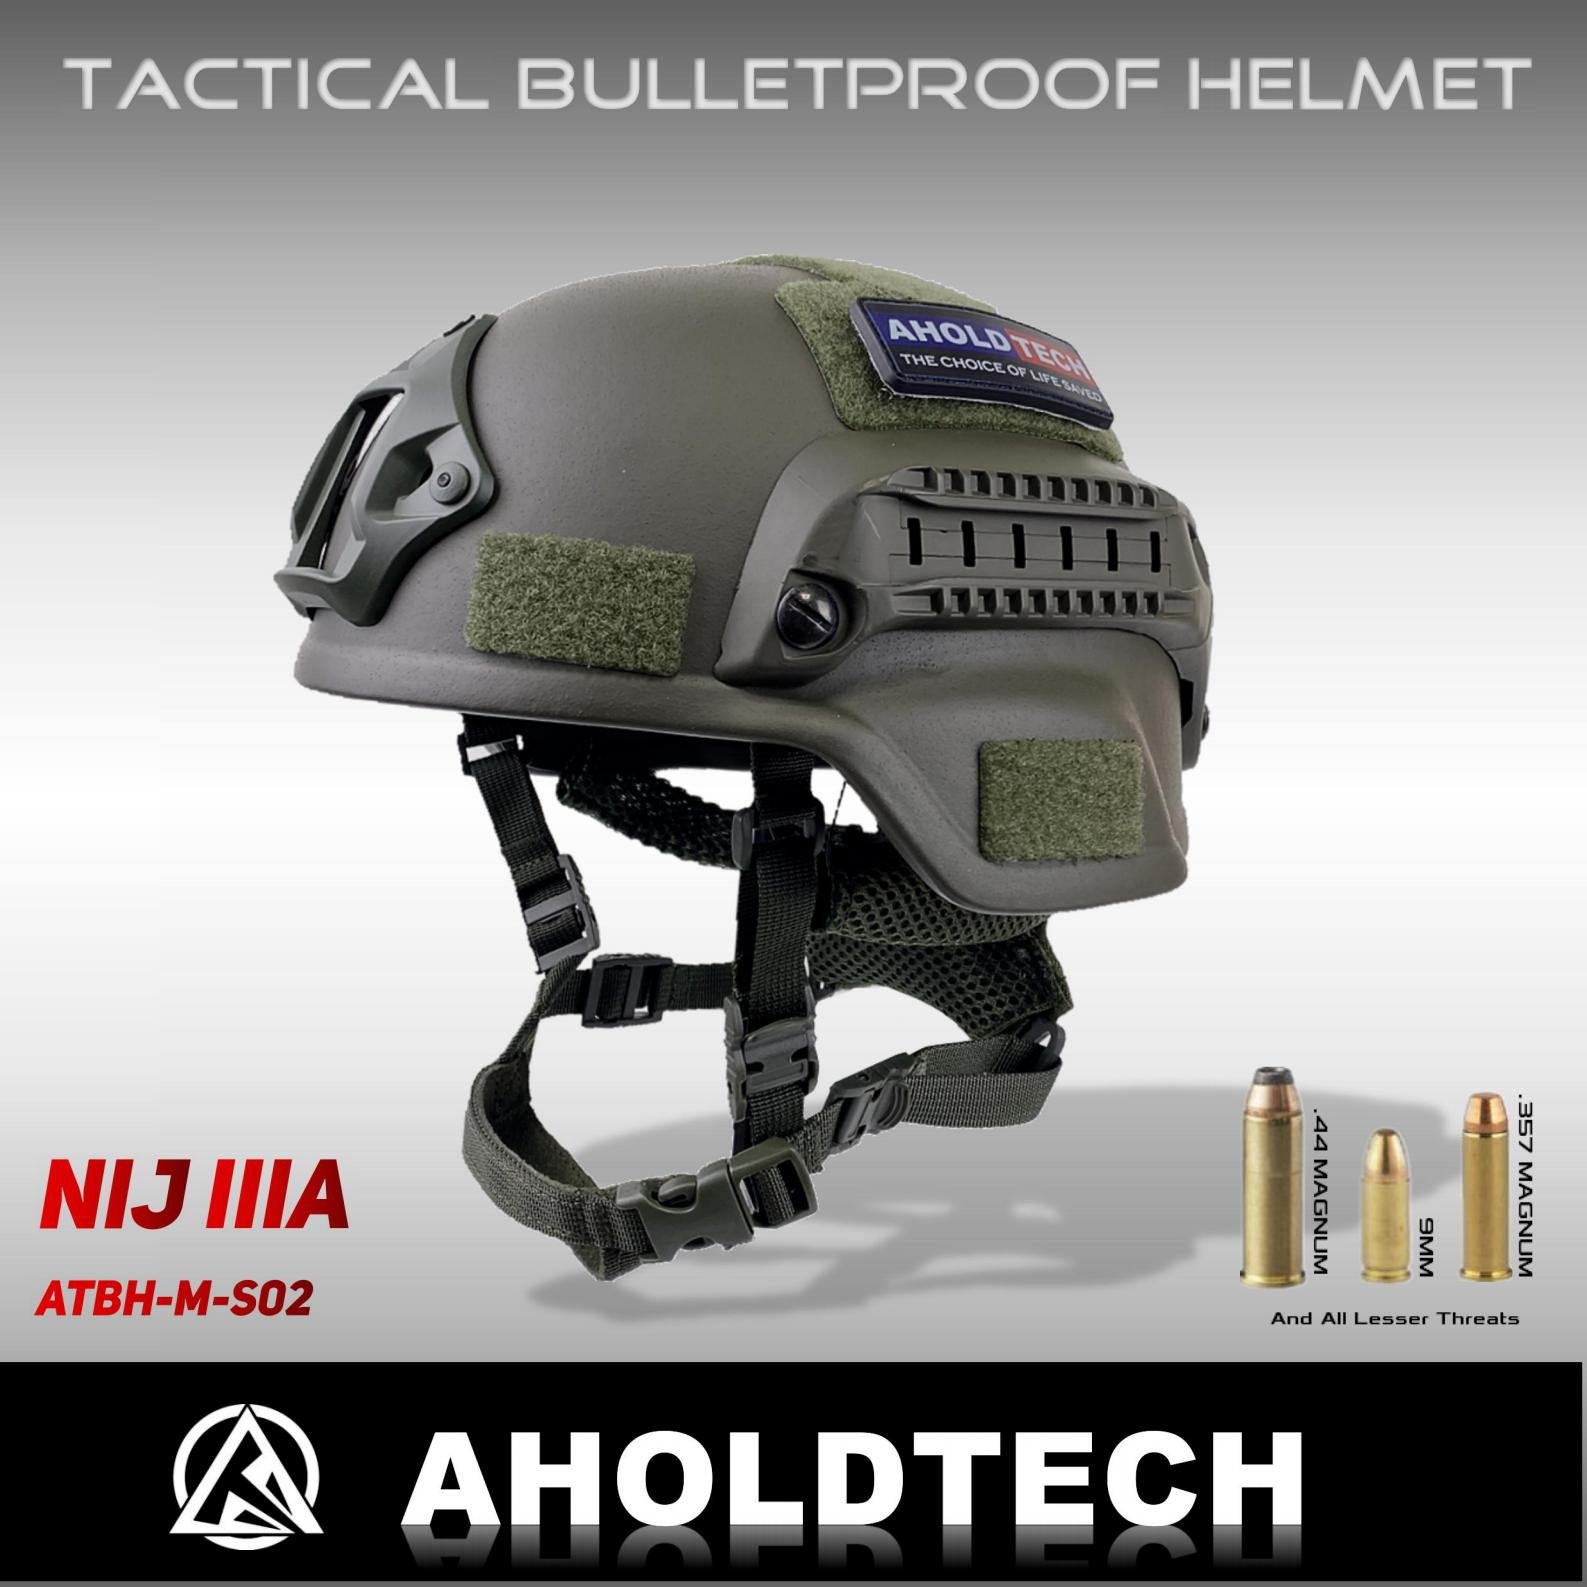 Casco ligero NIJ IIIA 3A MICH MS02, ajuste Dial EPIC Liner, a prueba de balas, casco balístico para policía del ejército